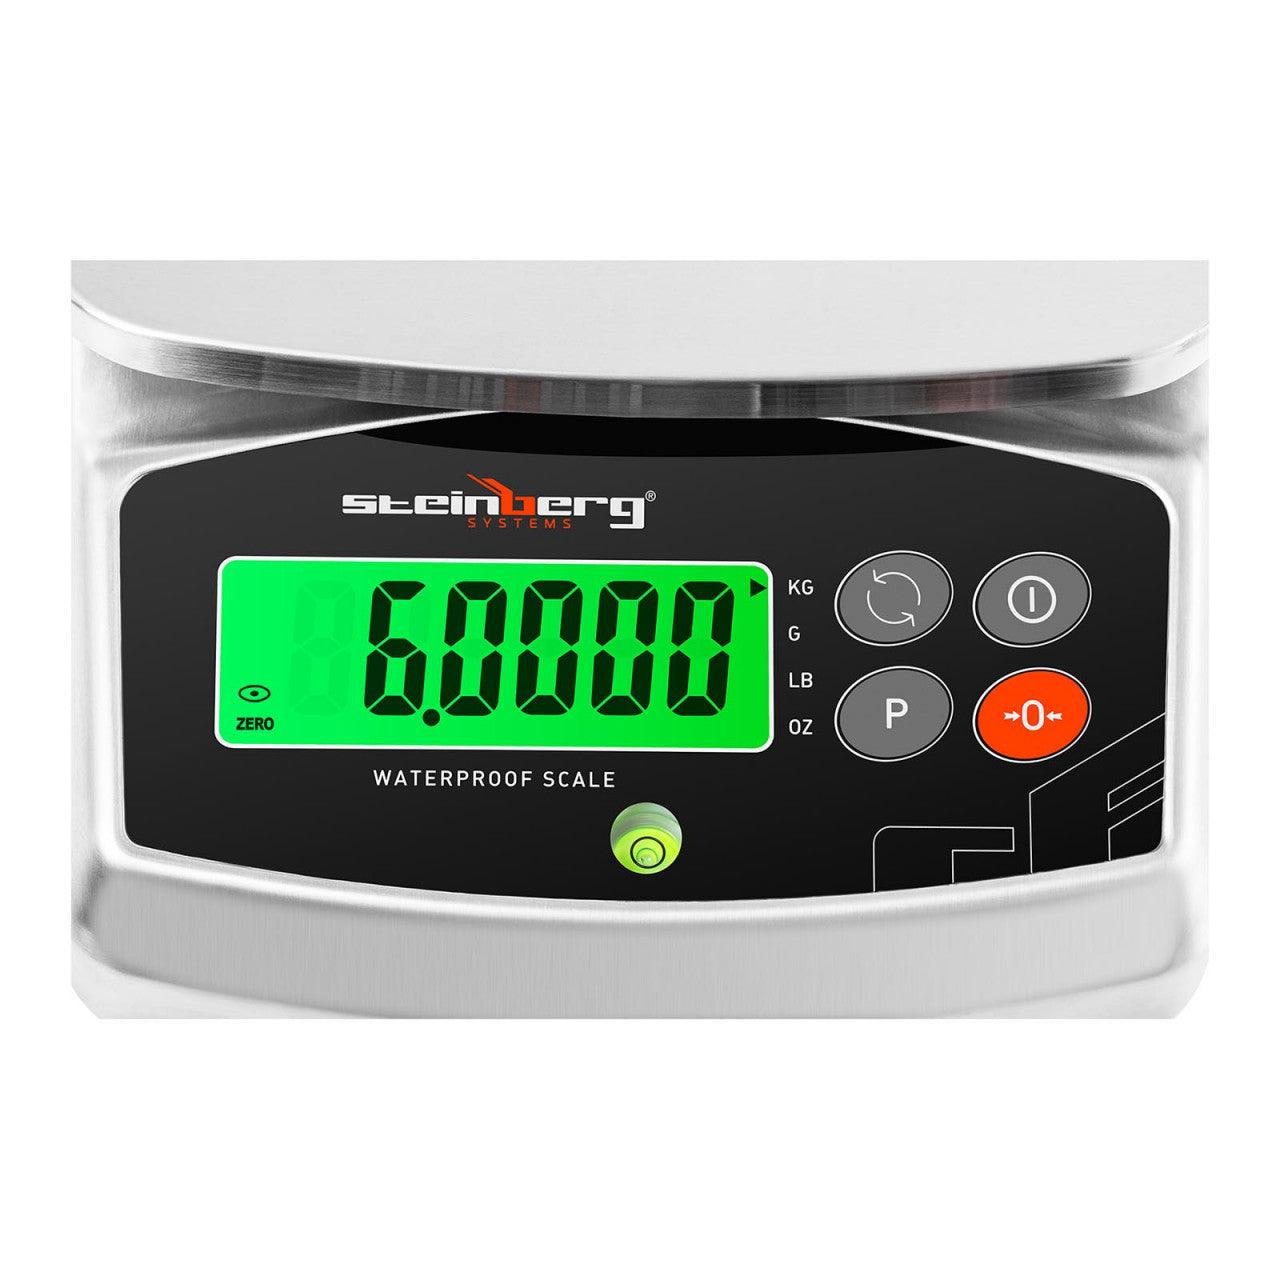 Balance de table cuisine pèse aliment numérique - 6 kg / 0,2 g